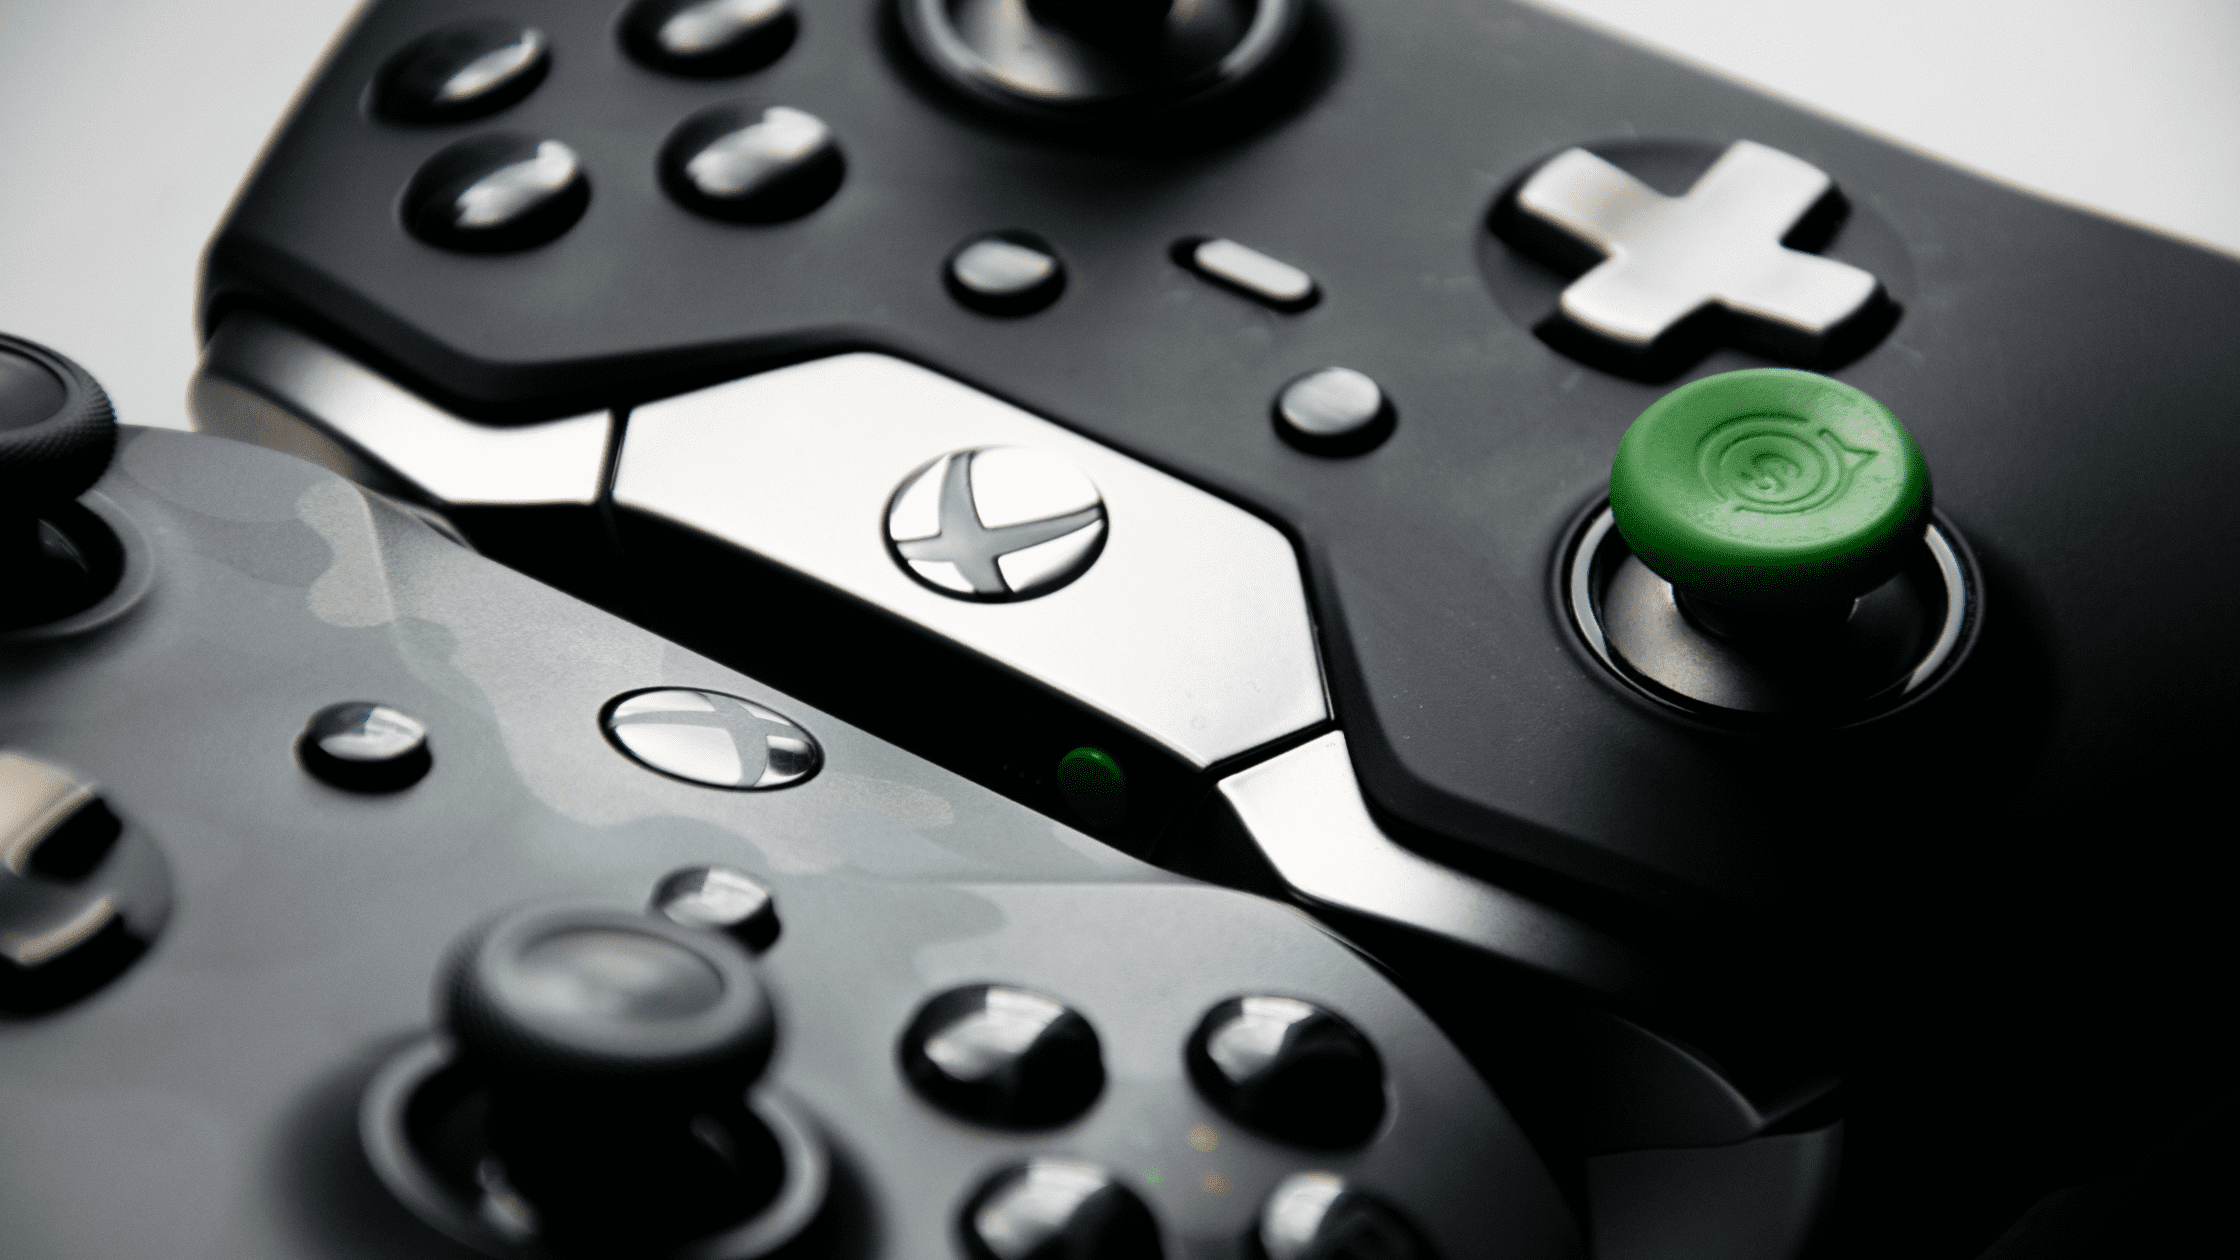 Fim da linha: Microsoft acaba com a produção do Xbox 360 - Olhar Digital